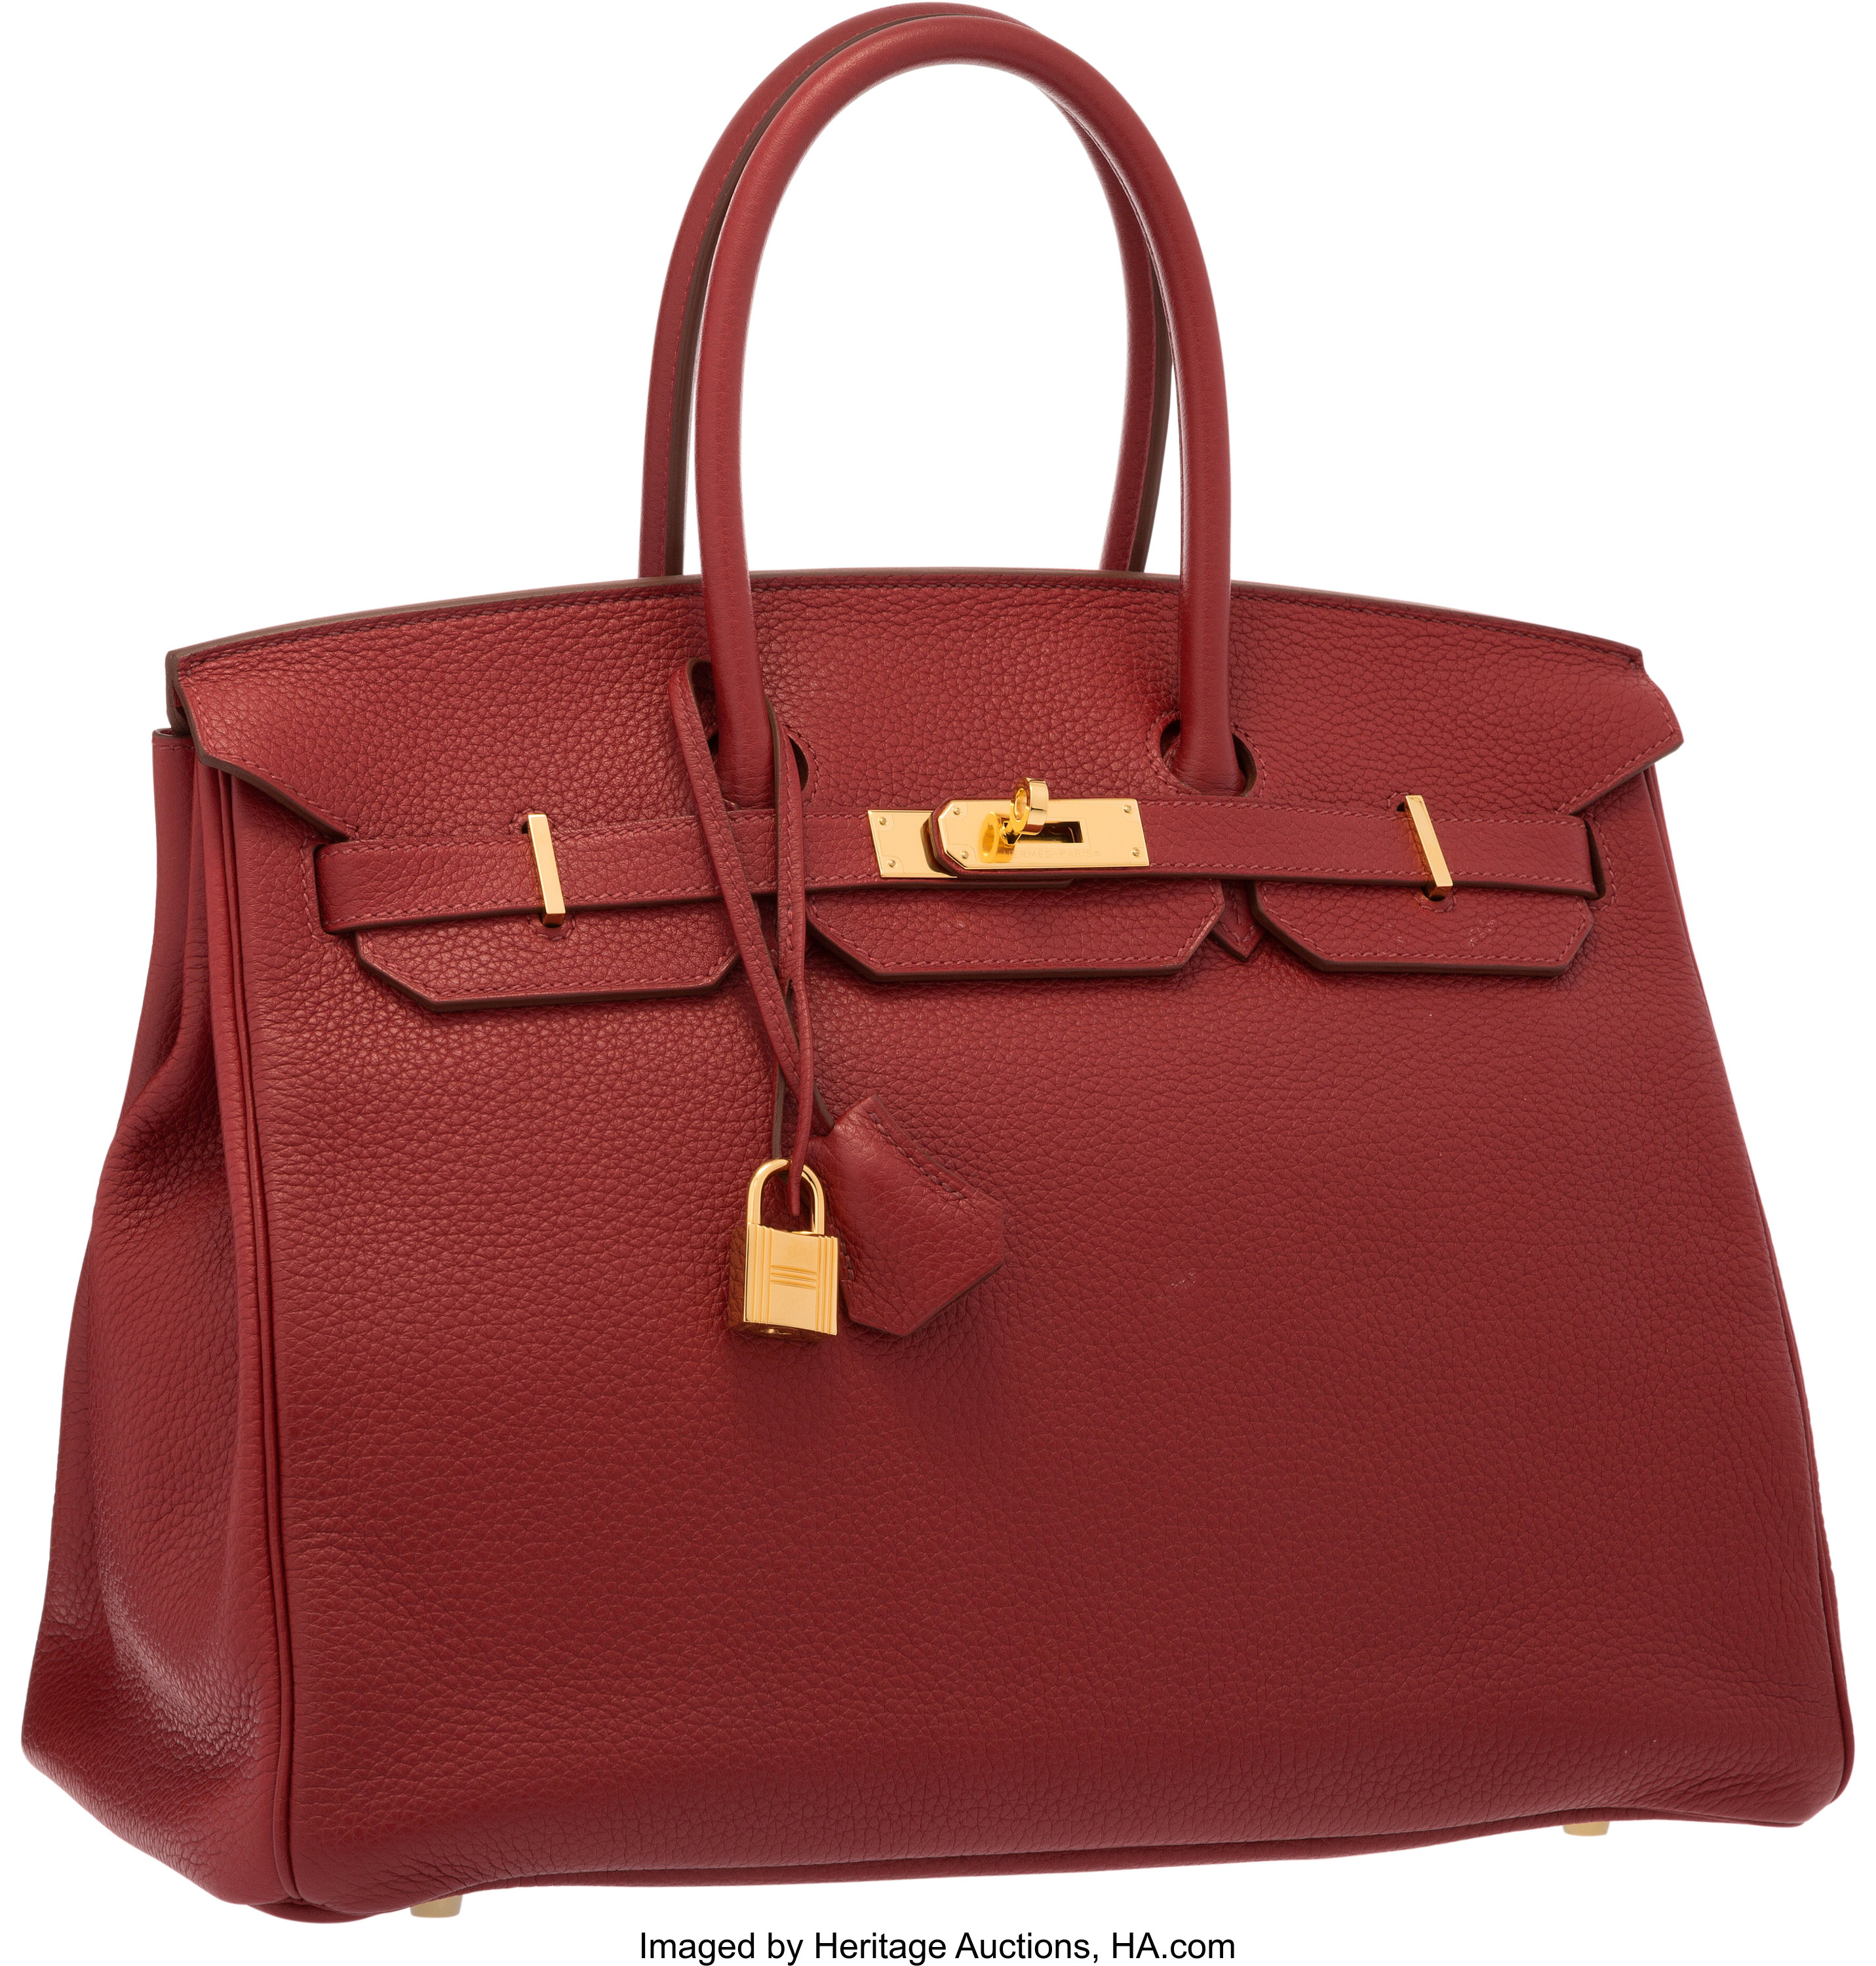 Sold at Auction: Hermes Rouge Garance Red Birkin Bag 35 cm Purse